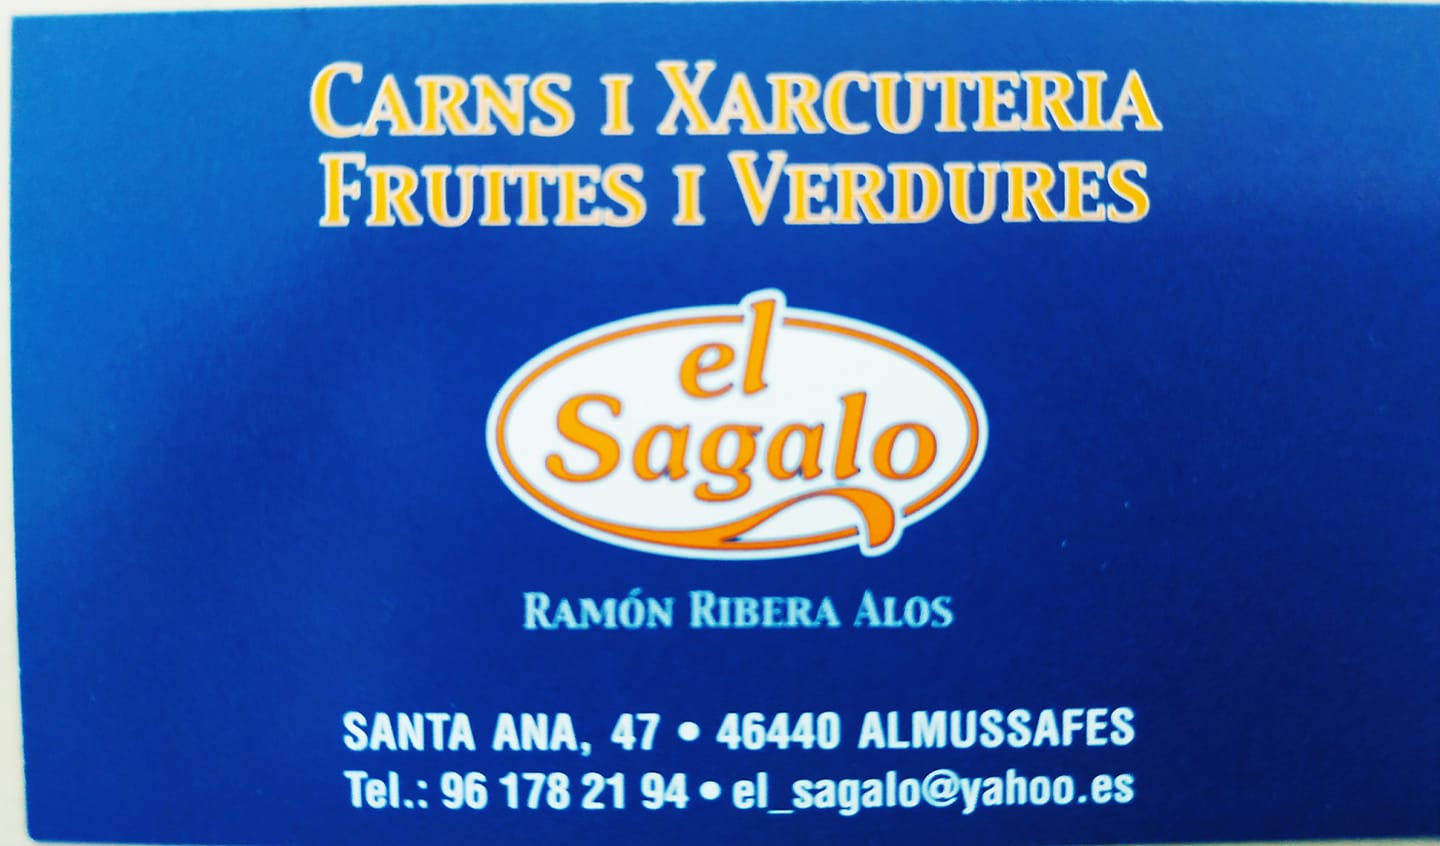 25- Supermercat El Sagalo